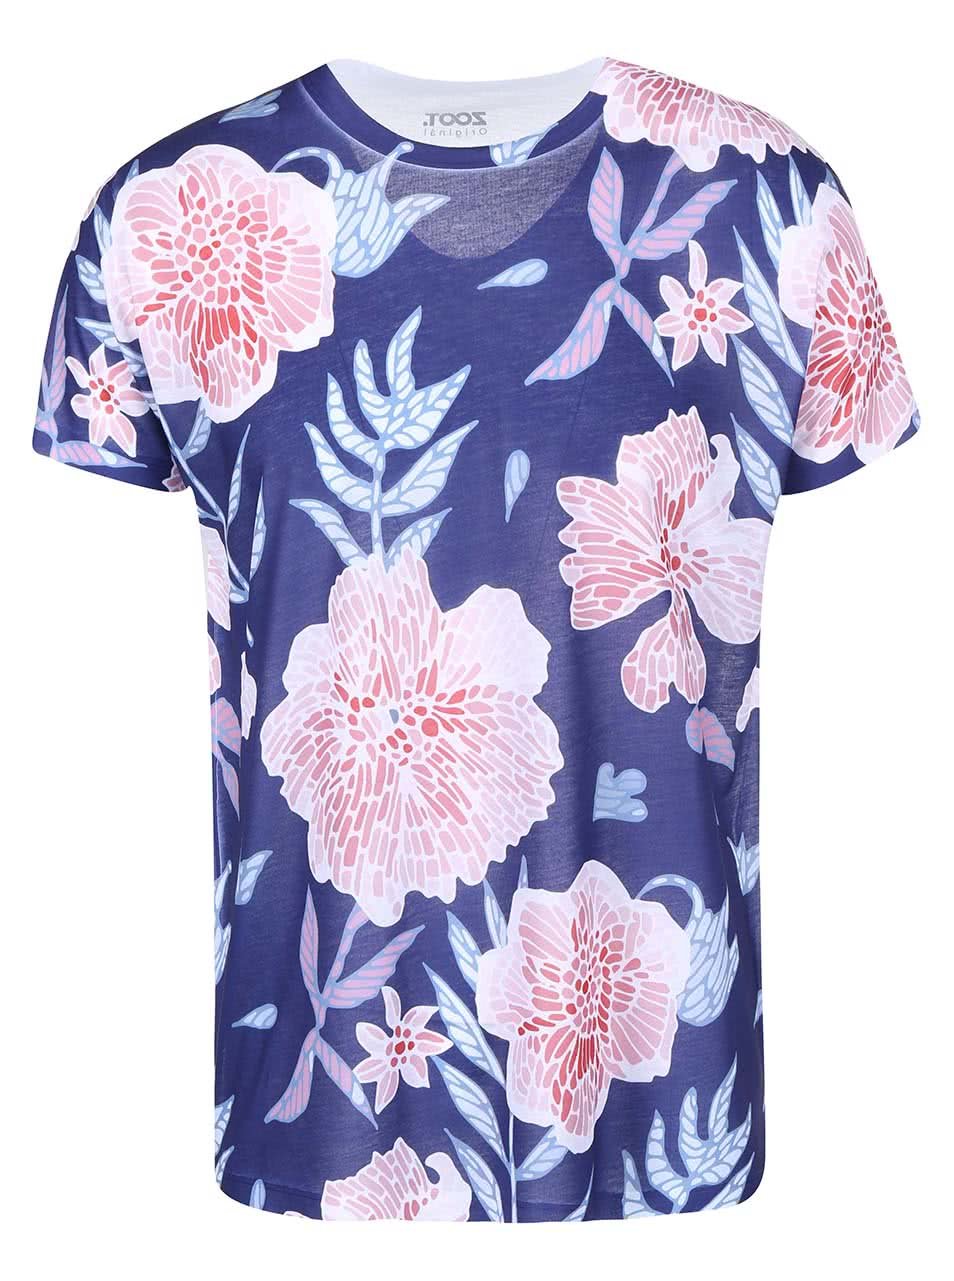 Modré pánské triko s růžovými květy ZOOT Originál Květiny